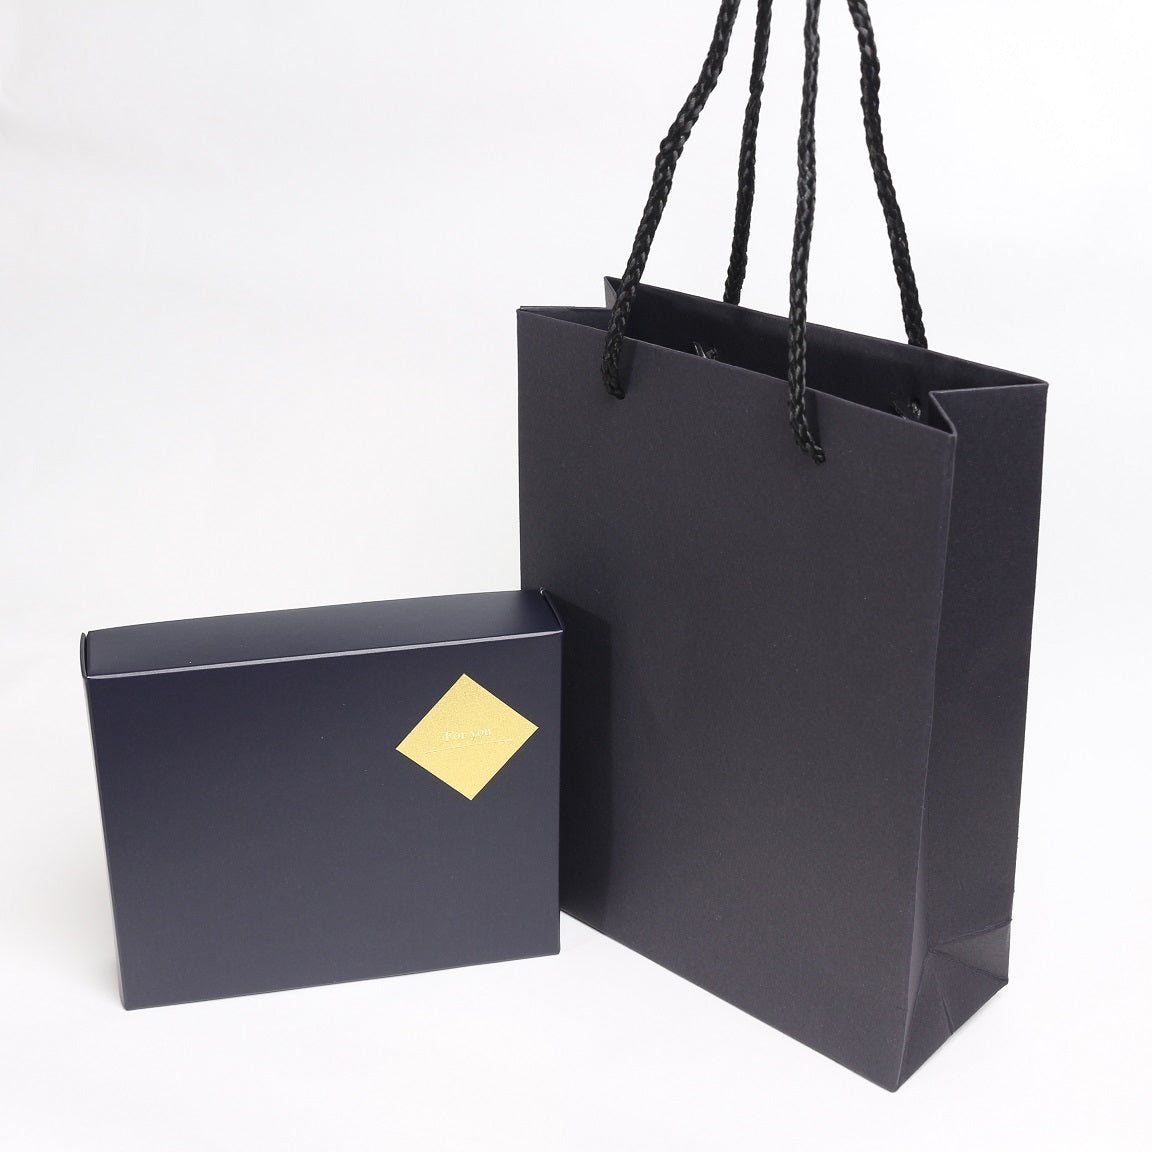 ◆Gift box (with gift bag)